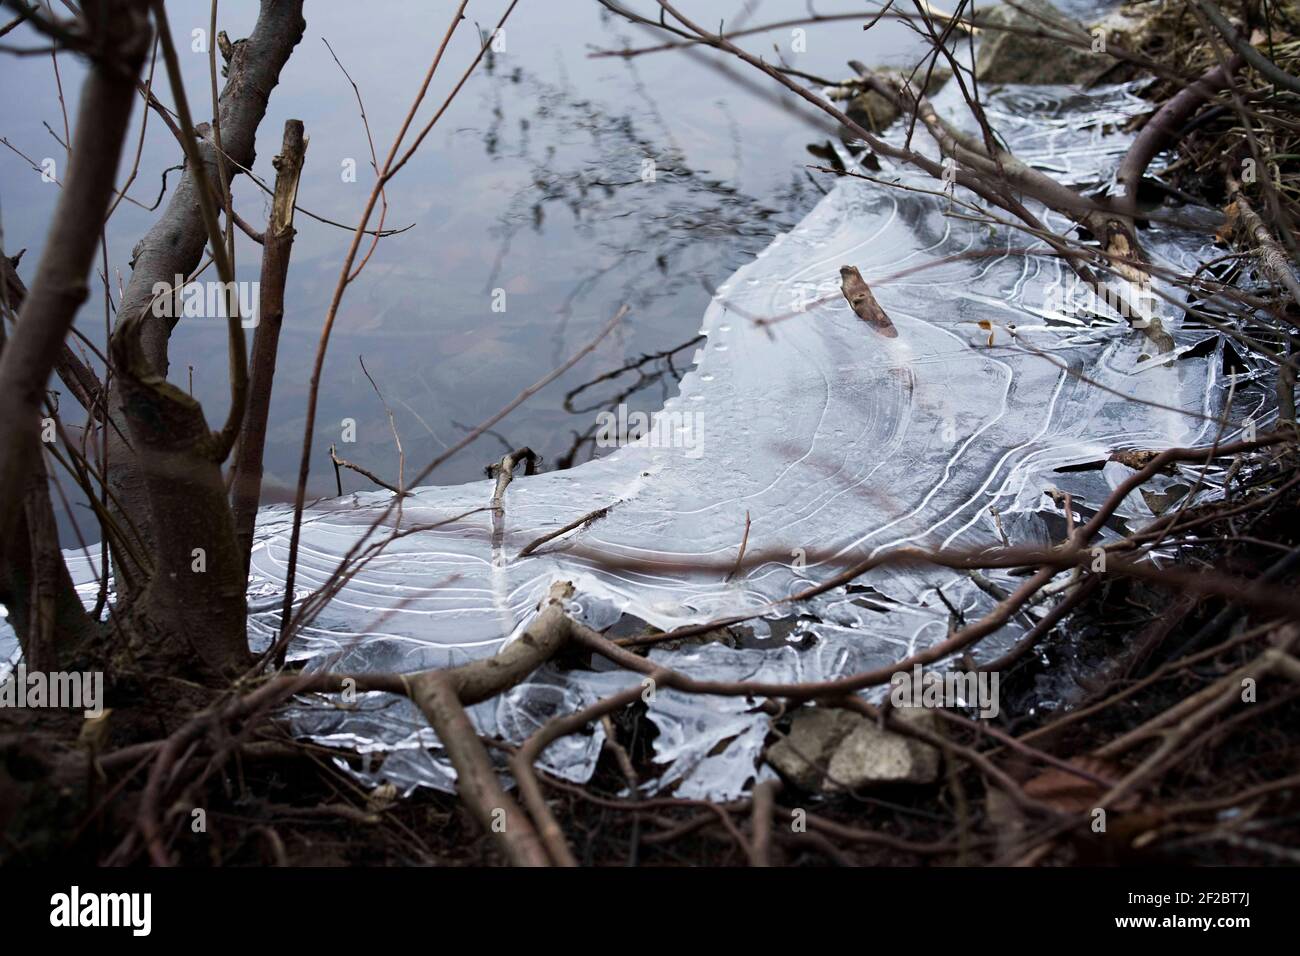 Poznan, Wielkopolska, Polonia. 11 Marzo 2021. Dalla mattina sulla riva orientale del lago Rusalka si potevano osservare le forme di ghiaccio, creando modelli originali. Questa è una delle ultime tracce dell'inverno in partenza a Poznan. Credit: Dawid Tatarkiewicz/ZUMA Wire/Alamy Live News Foto Stock